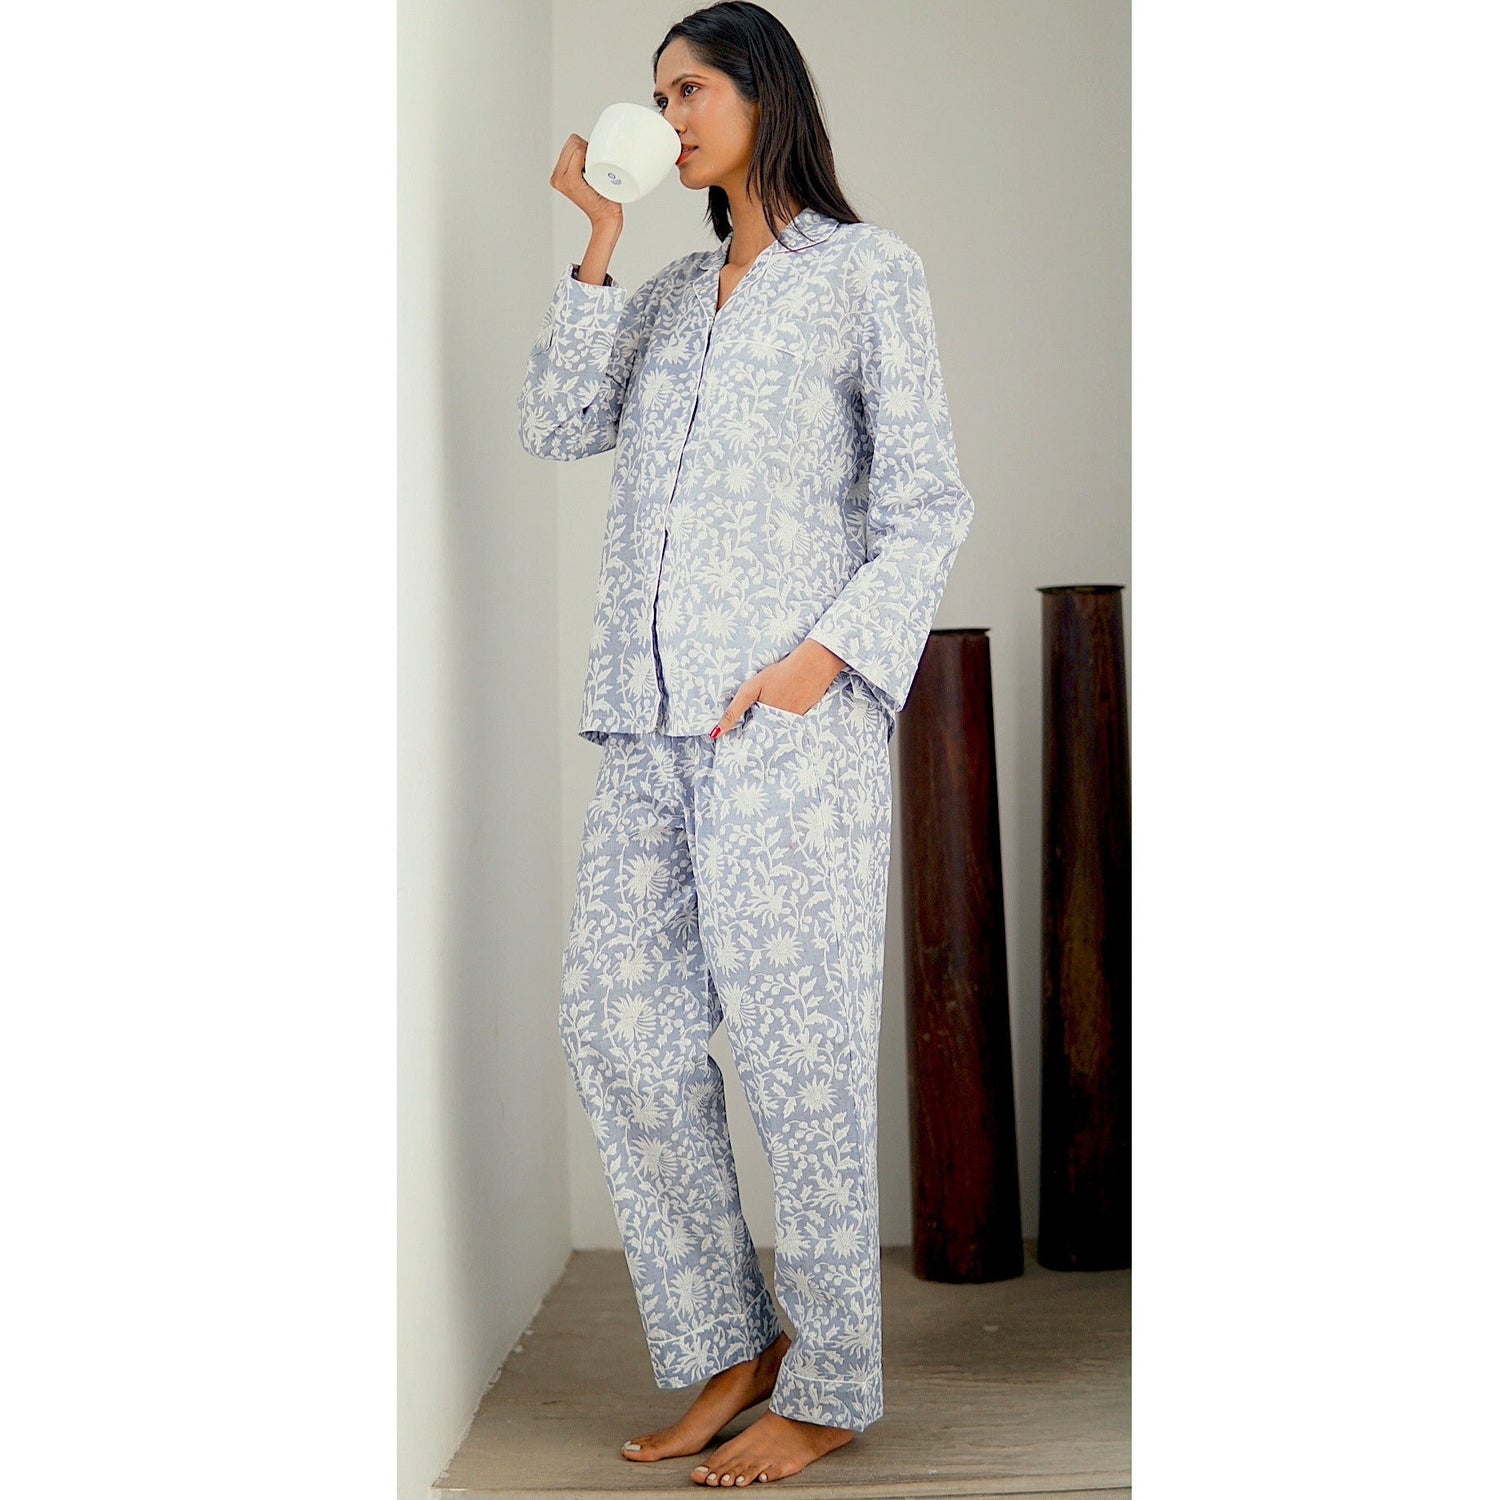 Pyjamas, handmade cotton pyjamas for women. silver grey and white cotton pyjamas, loungewear